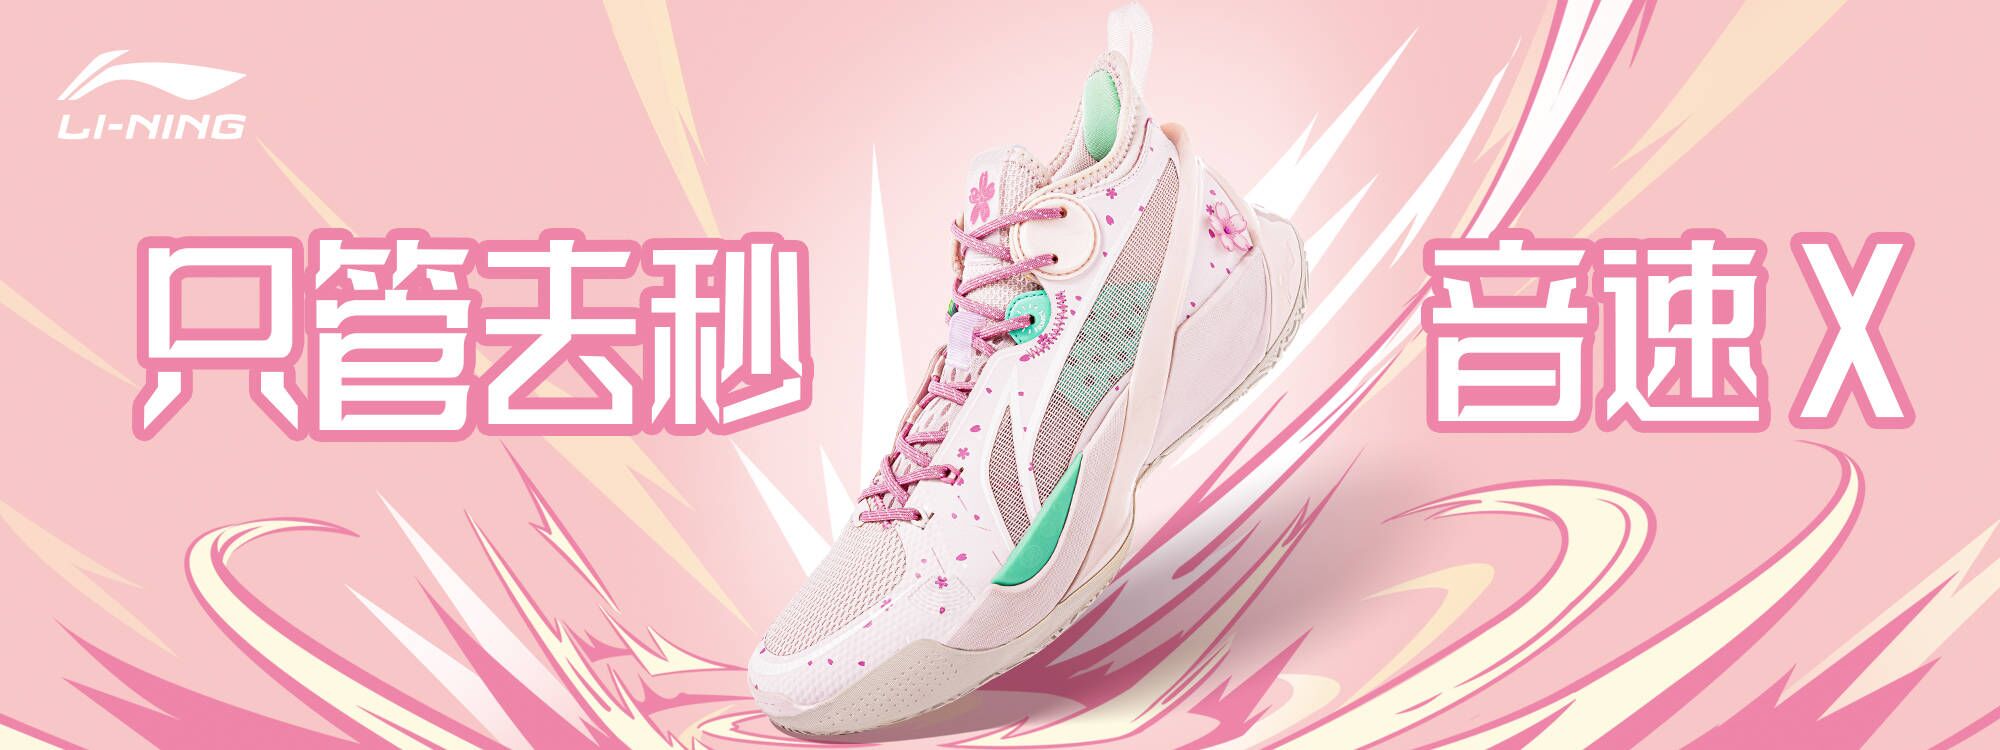 Li Ning Basketball